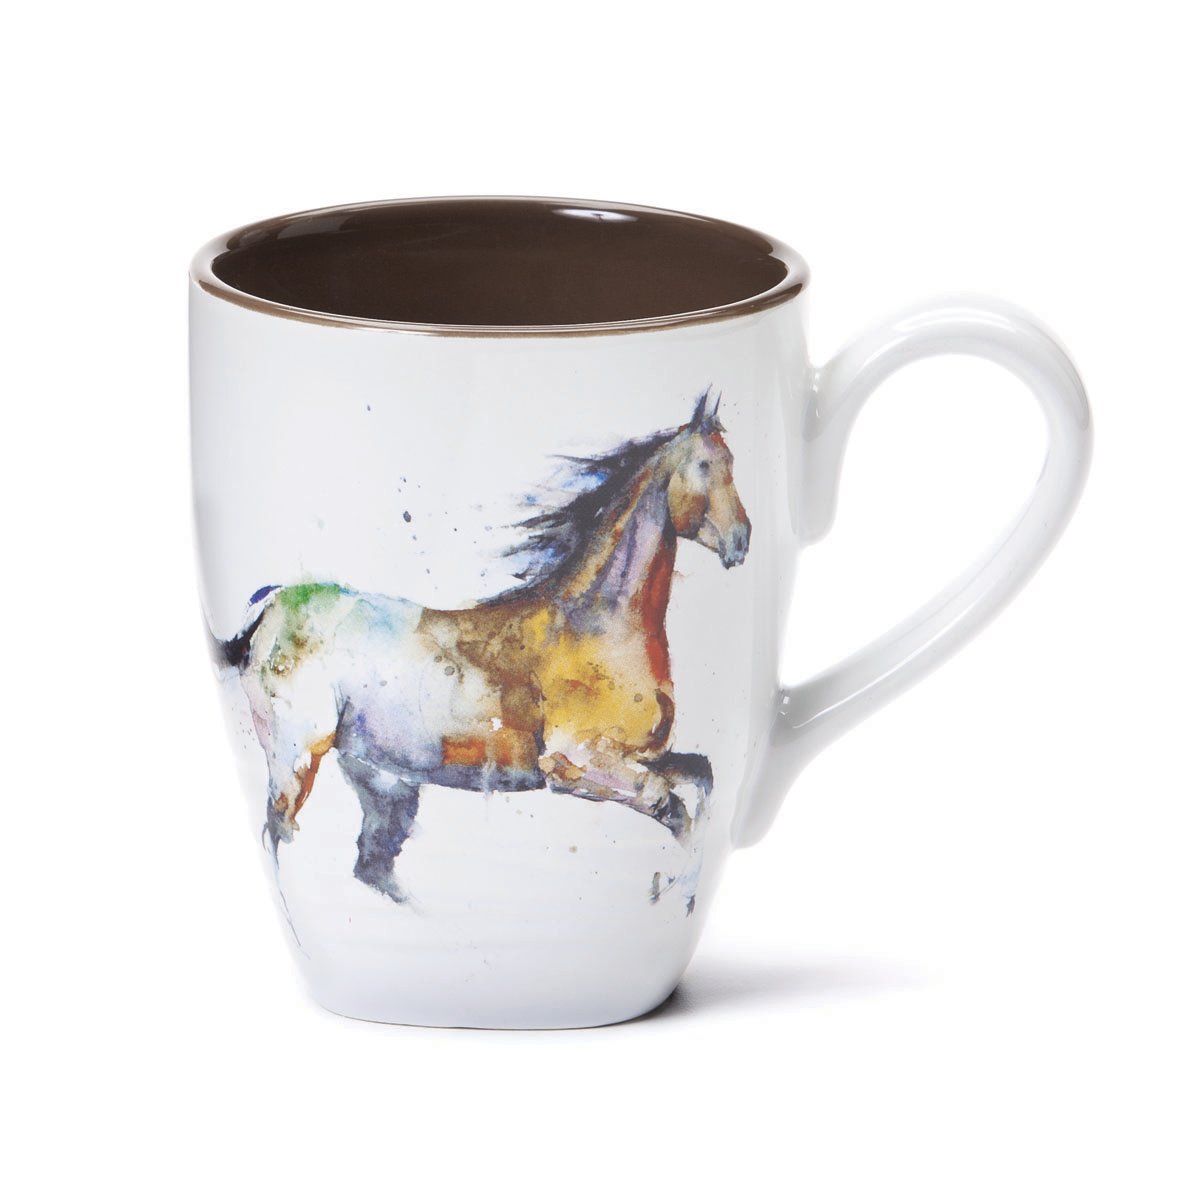 Horse Mug